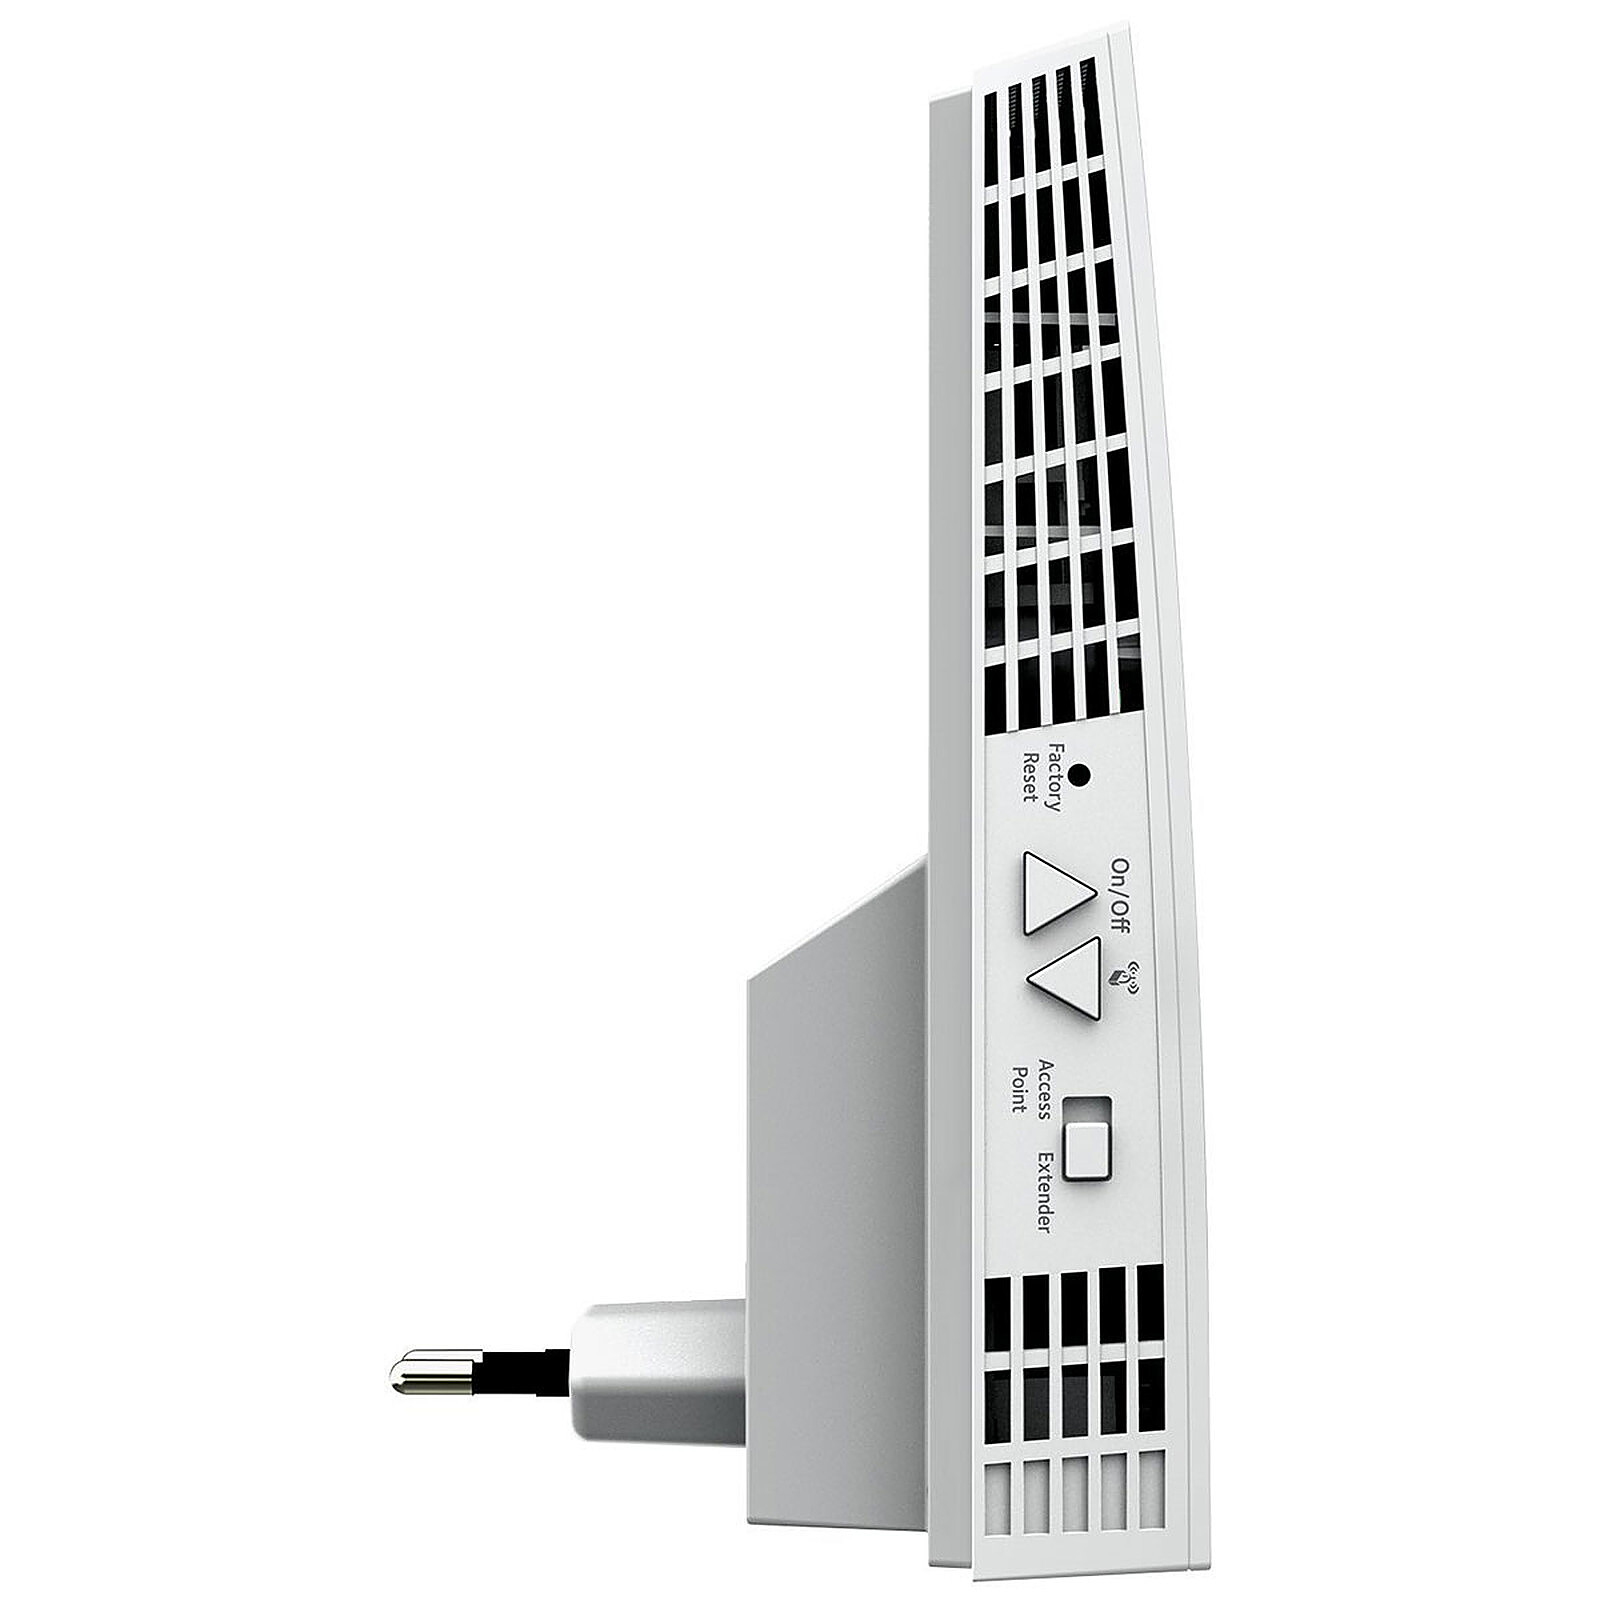 Netgear AX1800 WiFi Mesh Extender (EAX15) - Répéteur Wi-Fi - Garantie 3 ans  LDLC